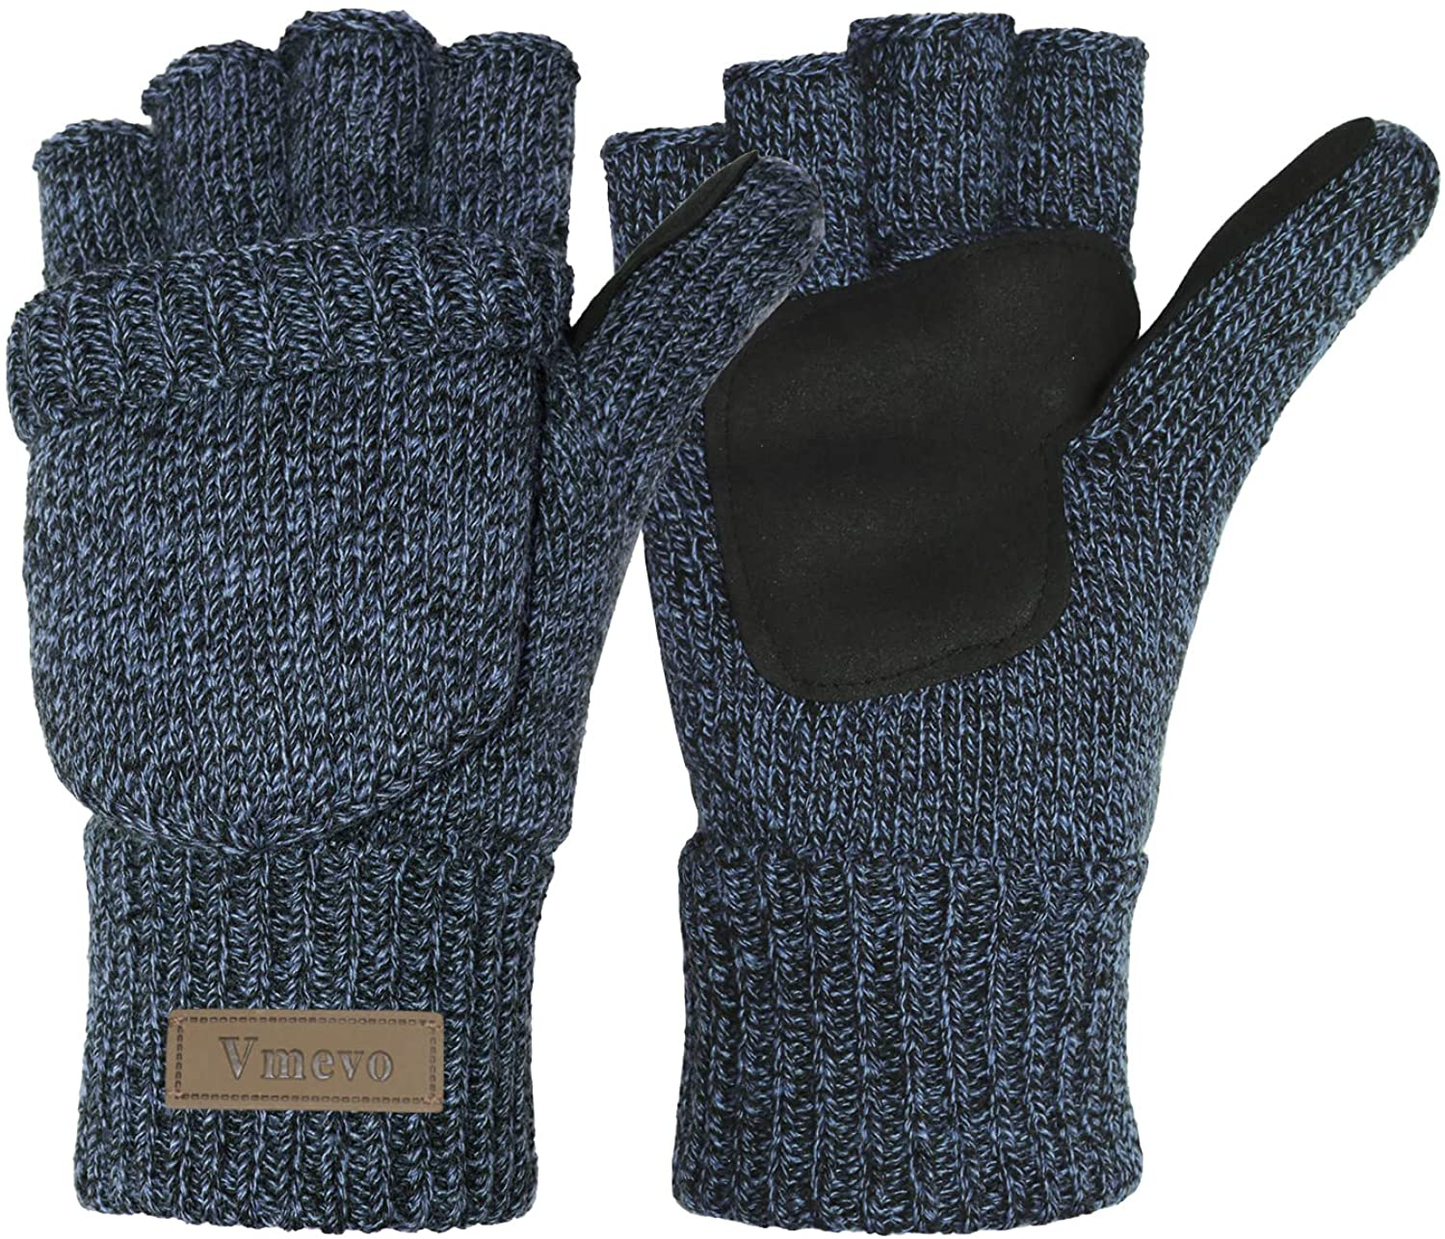 Winter Knitted Convertible Fingerless Gloves Wool Mittens Warm Mitten Glove for Women and Men